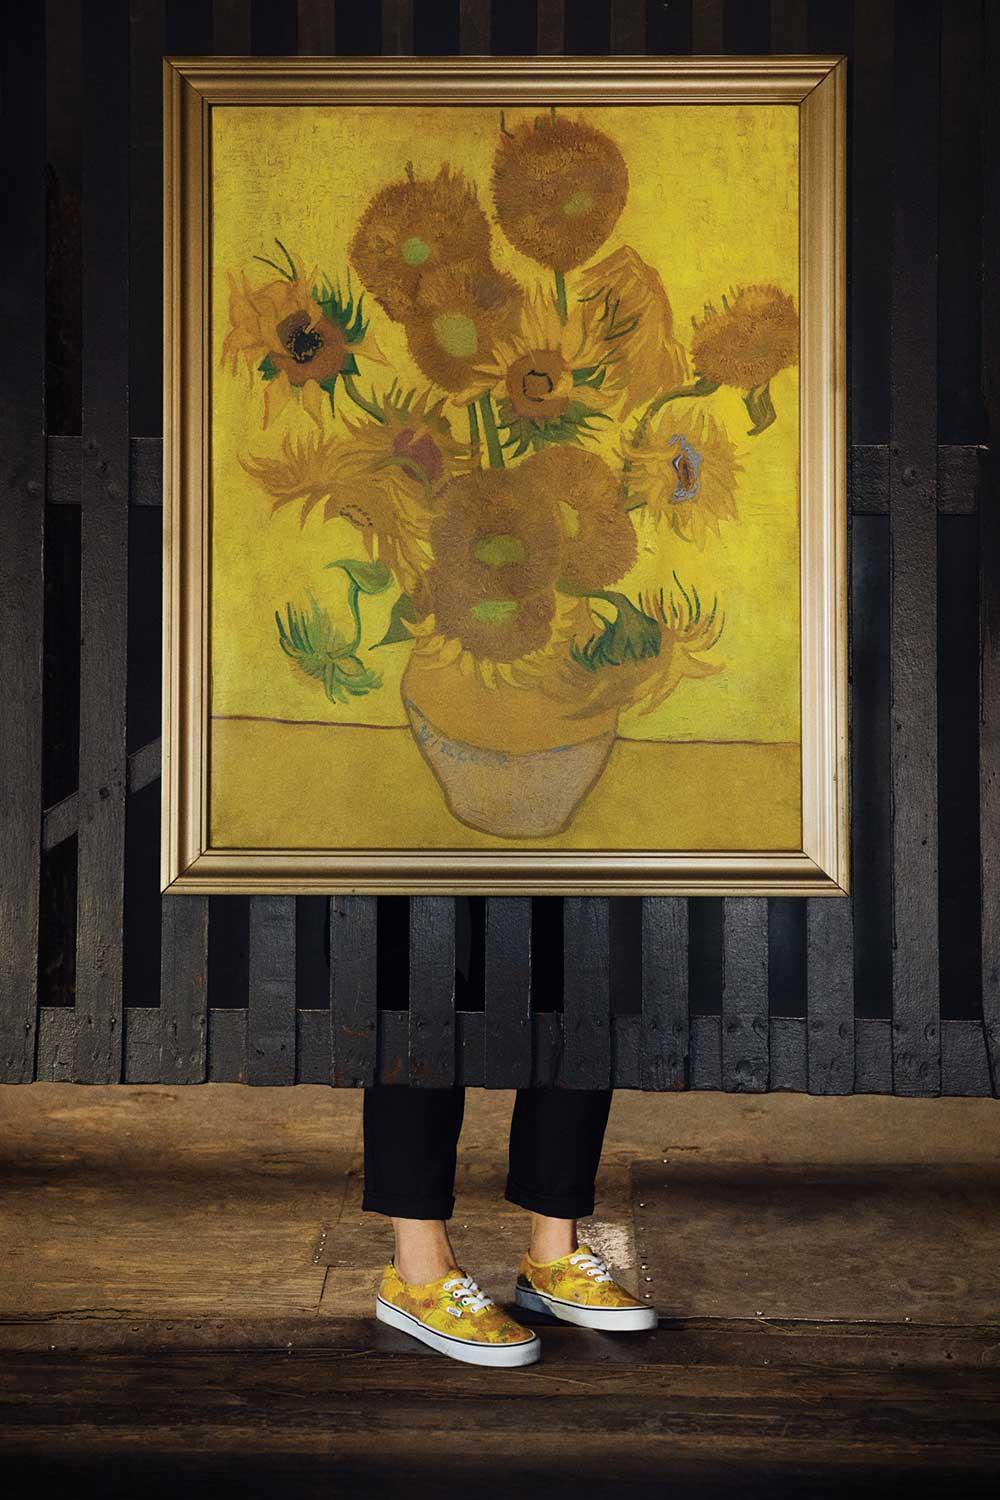 Dus jij wilt echte Van Gogh in huis, zonder er miljoenen op stuk te slaan? Kan hoor, met deze Van Gogh Vans kun je zelfs op zijn kunst lopen.